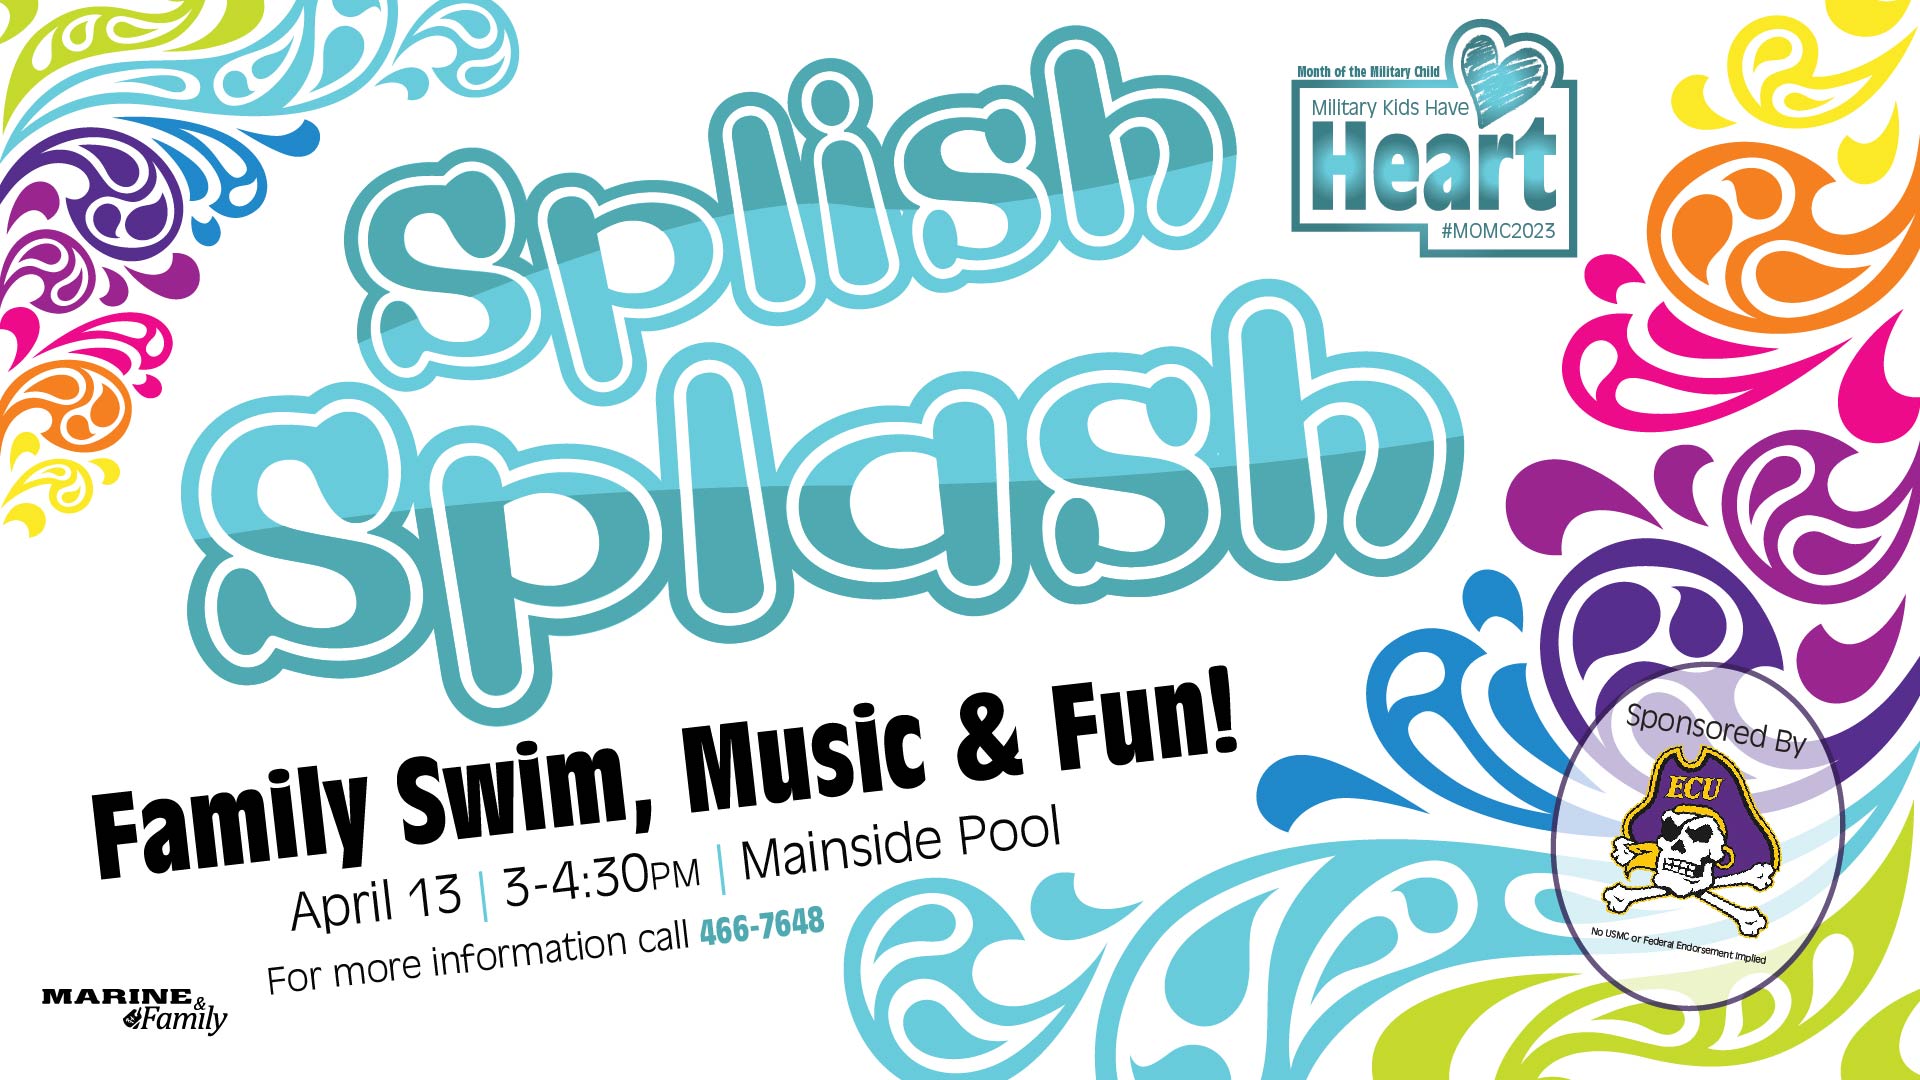 Splish Splash Family Swim